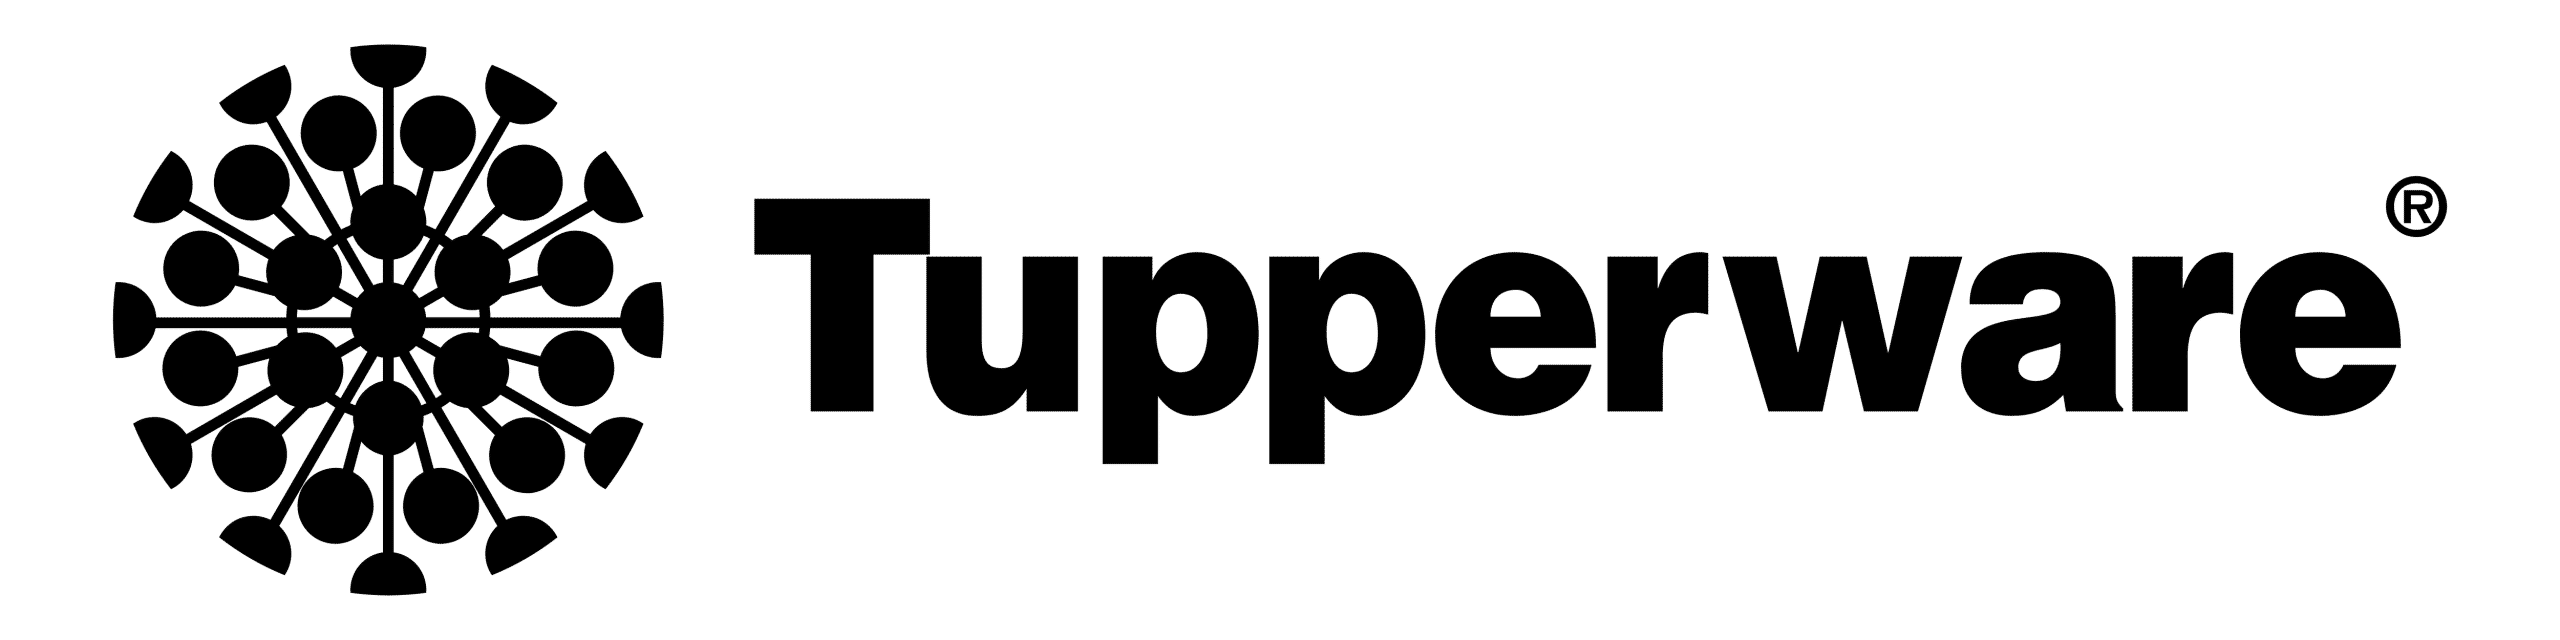 logotipo de tupperware